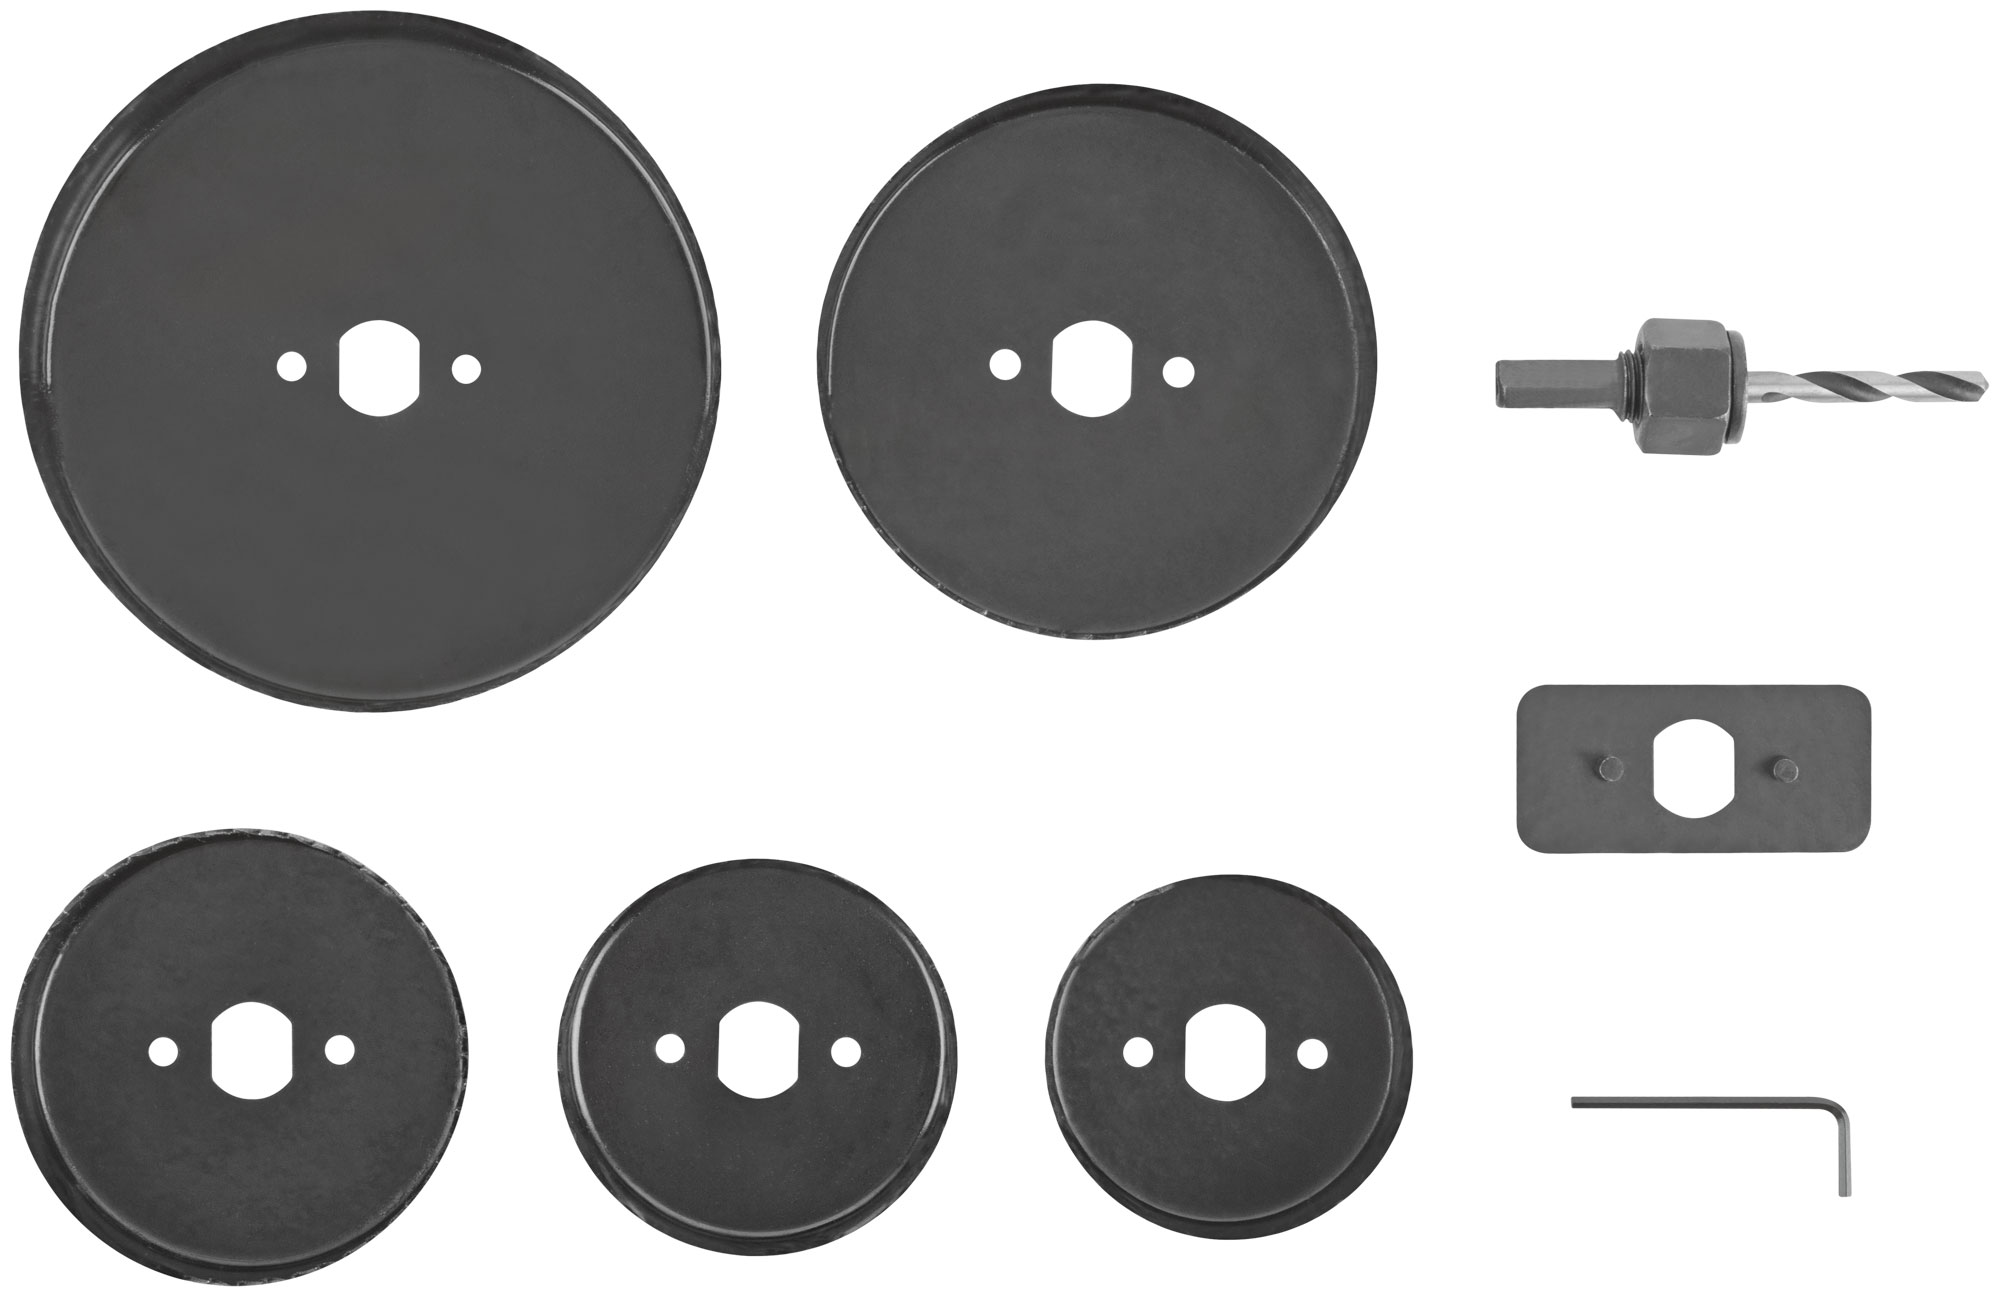 Пилы круговые Профи 68 -127 мм набор 5 шт. (68, 72, 82, 102, 127 мм)  в кейсе набор полотен по дереву для сабельной пилы ingco